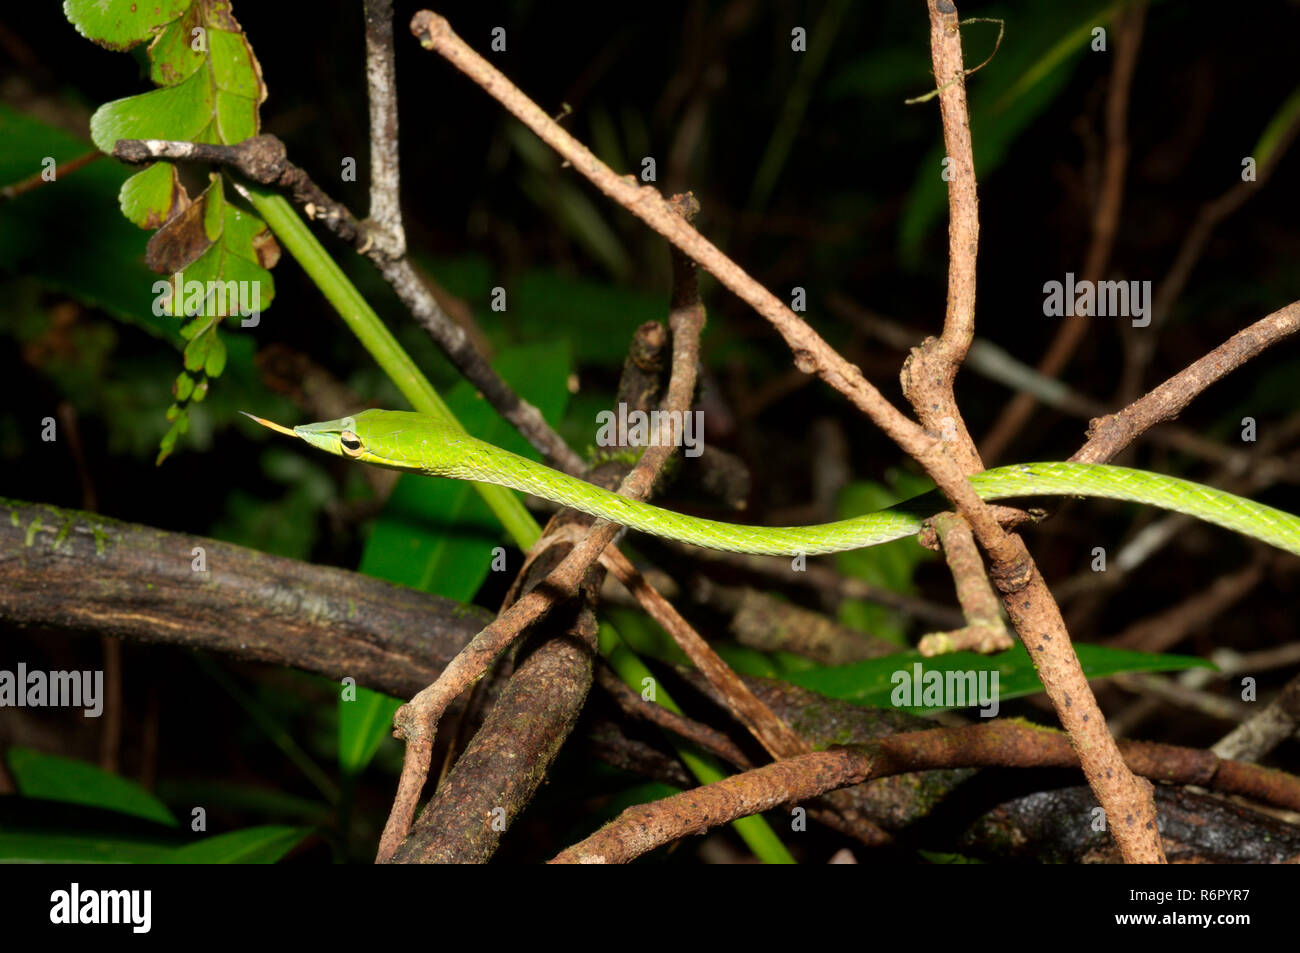 Spitzzange Tree Snake, grüne Rebe Schlange, Spitzzange Peitsche Schlange oder asiatischen Weinstock Schlange (Ahaetulla nasuta) Sinharaja Forest Reserve, Nationalpark, Sinhara Stockfoto